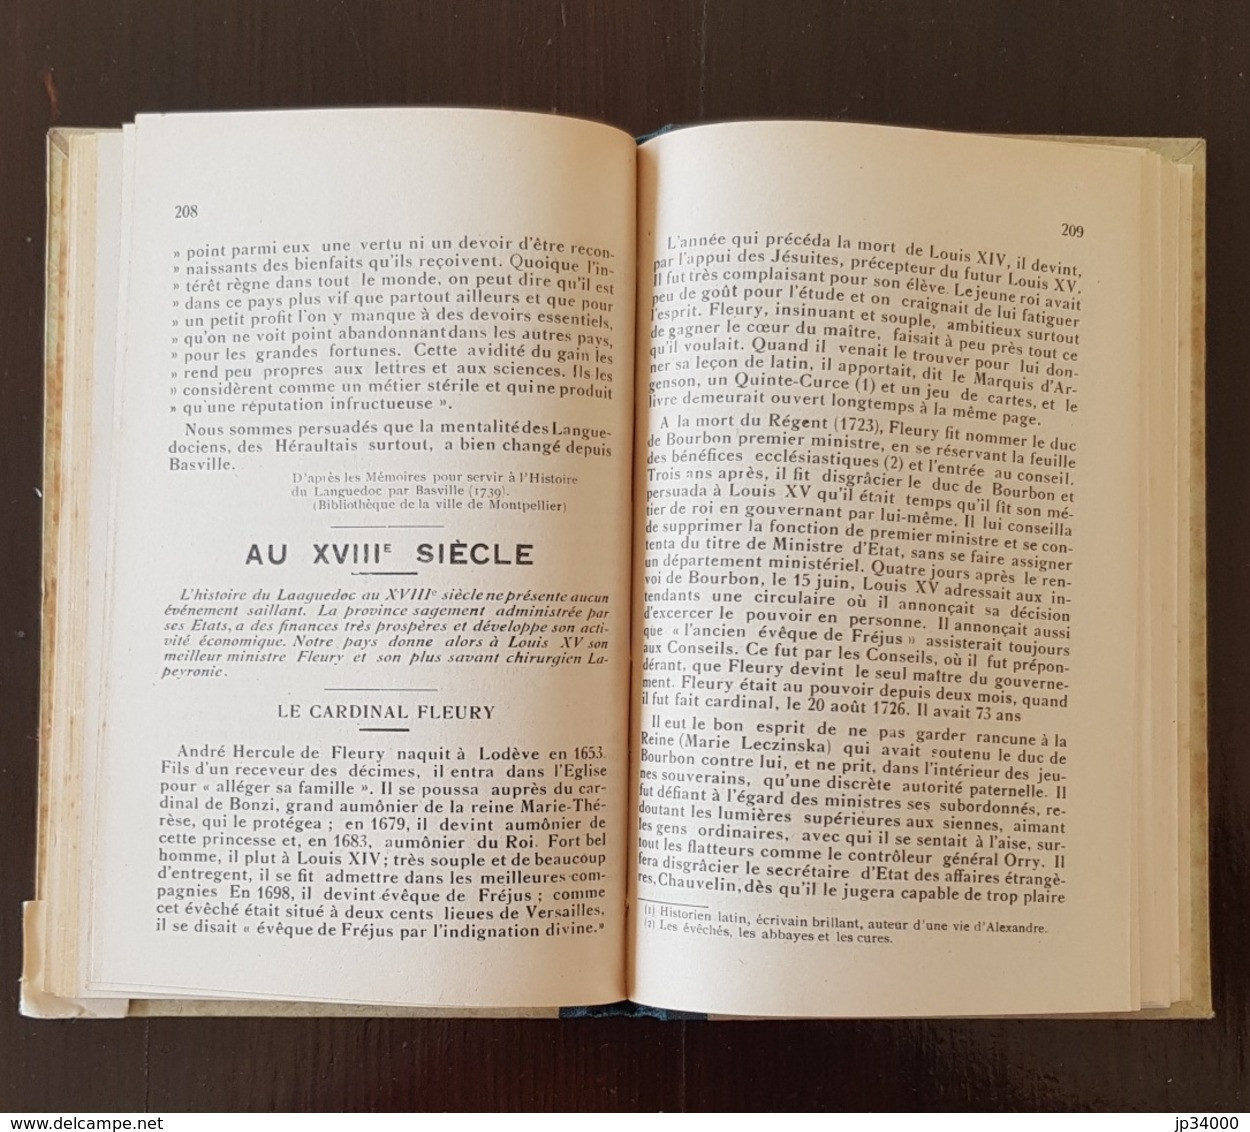 L'HERAULT GEOGRAPHIQUE & HISTORIQUE choix de lecture. par Marres & Blanquet. 1930